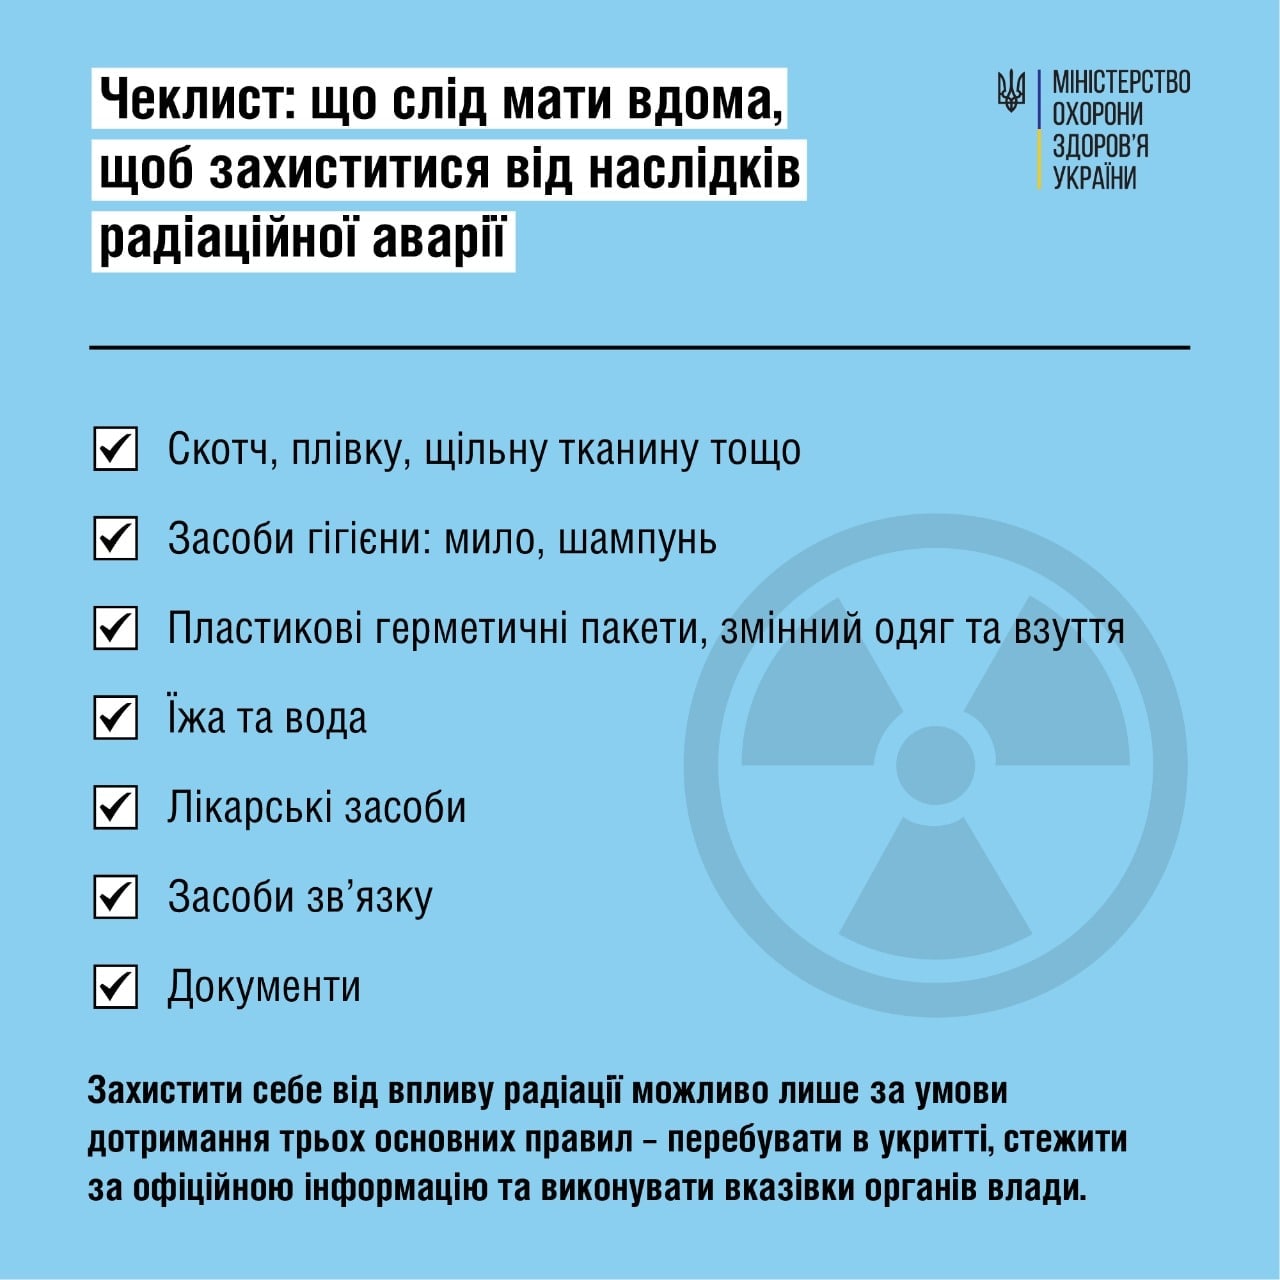 Как подготовиться к возможной радиационной аварии, – Минздрав опубликовал памятку